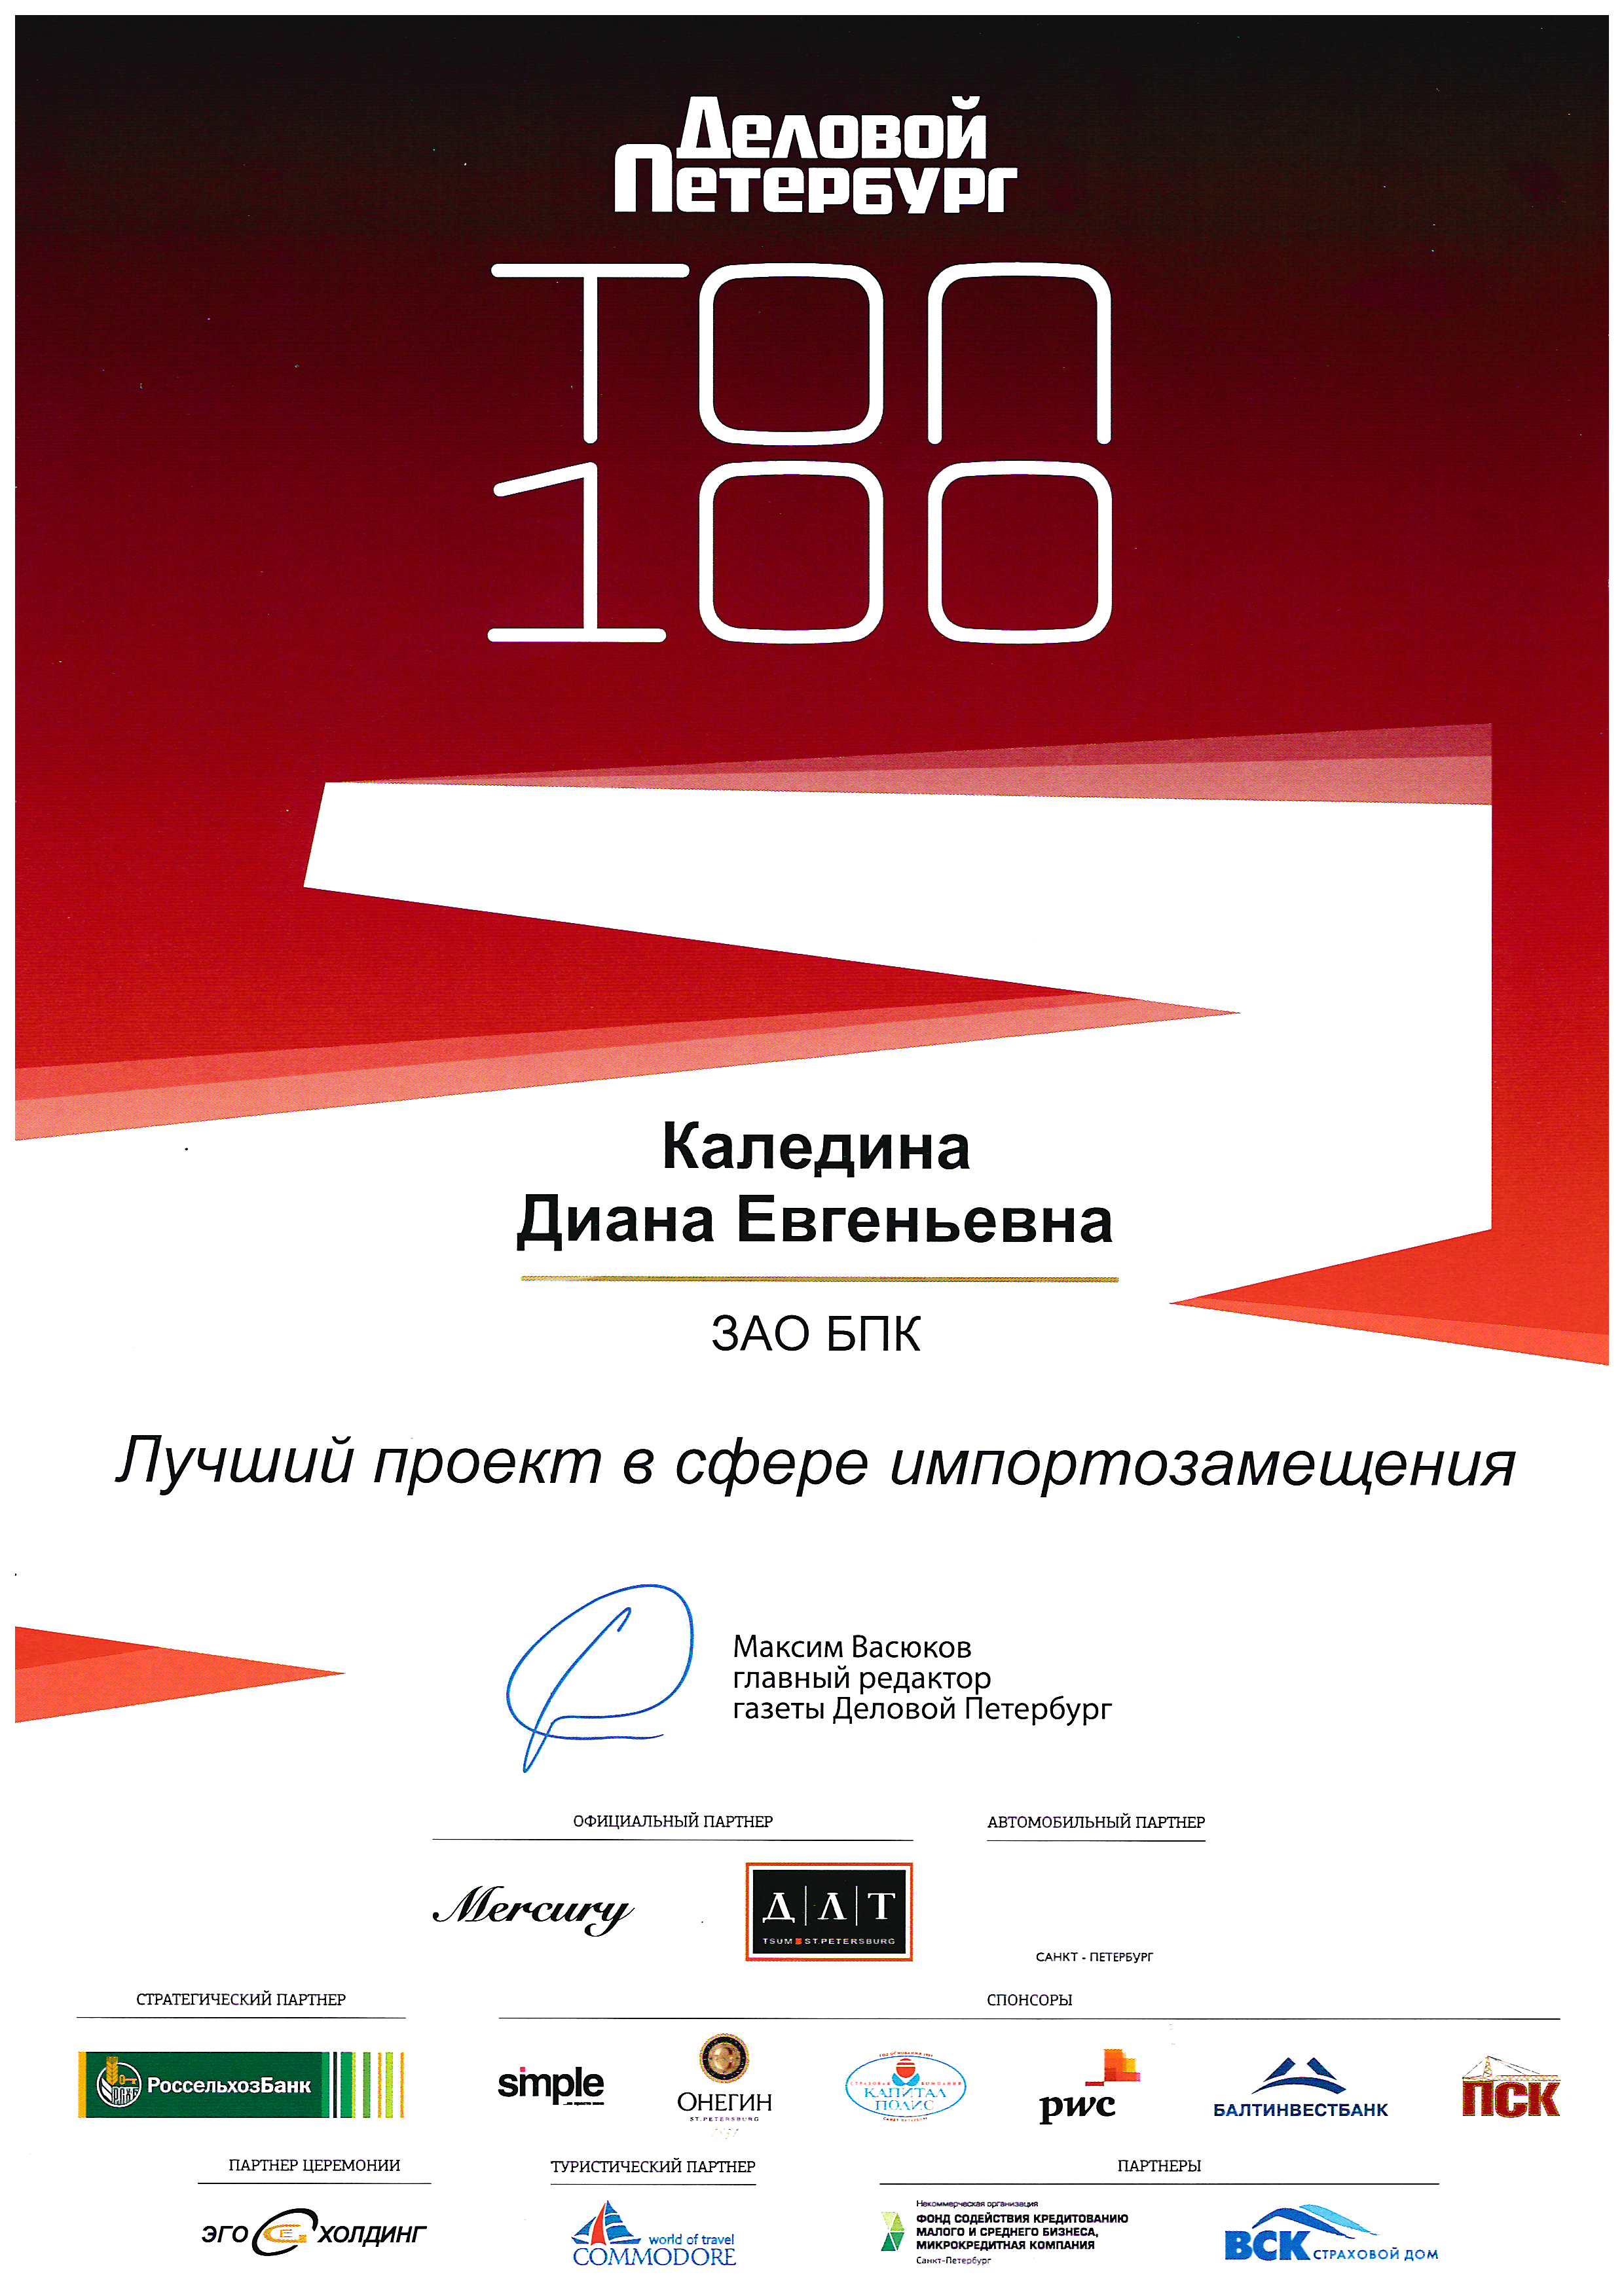 Диплом "Лучший проект в сфере импортозамещения" от "Делового Петербурга", премия ТОП-100